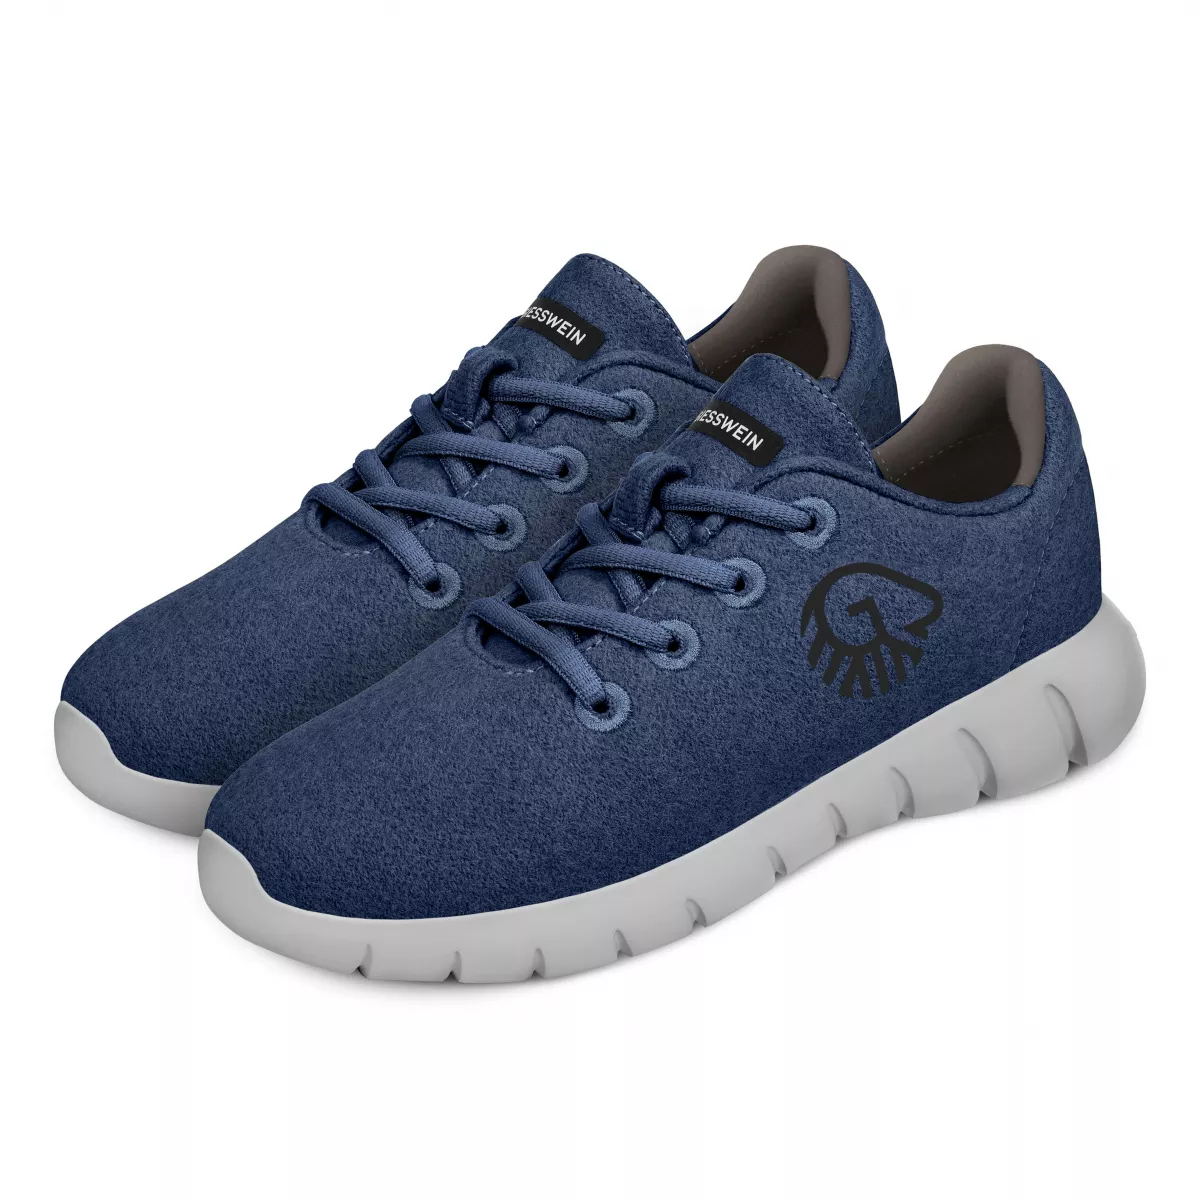 Pantofi barbati Merino Runners, ocean blue 46